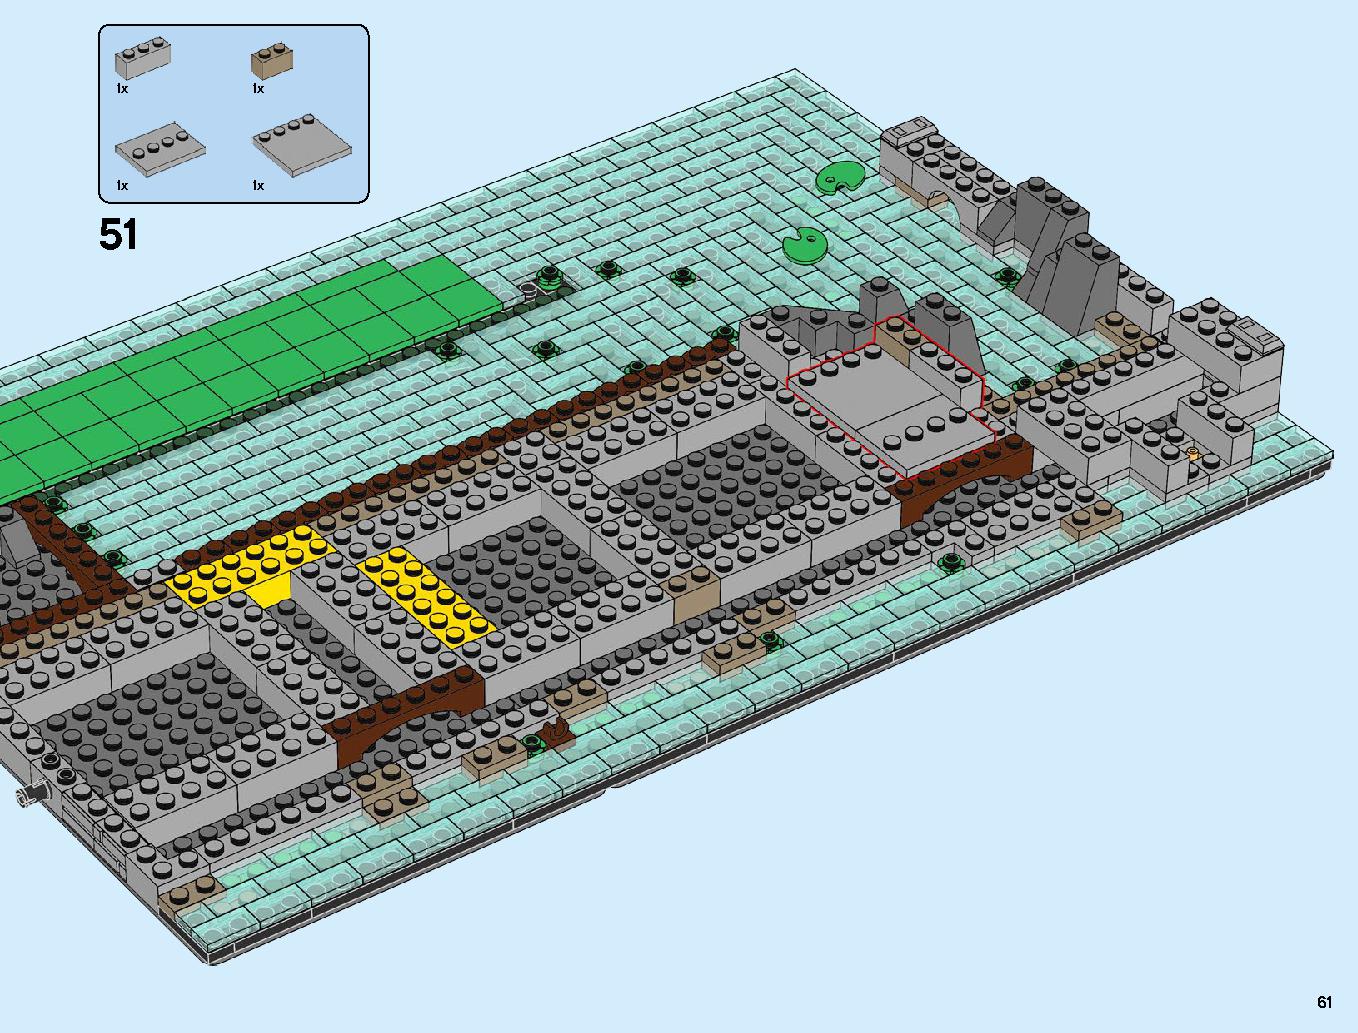 ニンジャゴーシティ・ポートパーク 70657 レゴの商品情報 レゴの説明書・組立方法 61 page